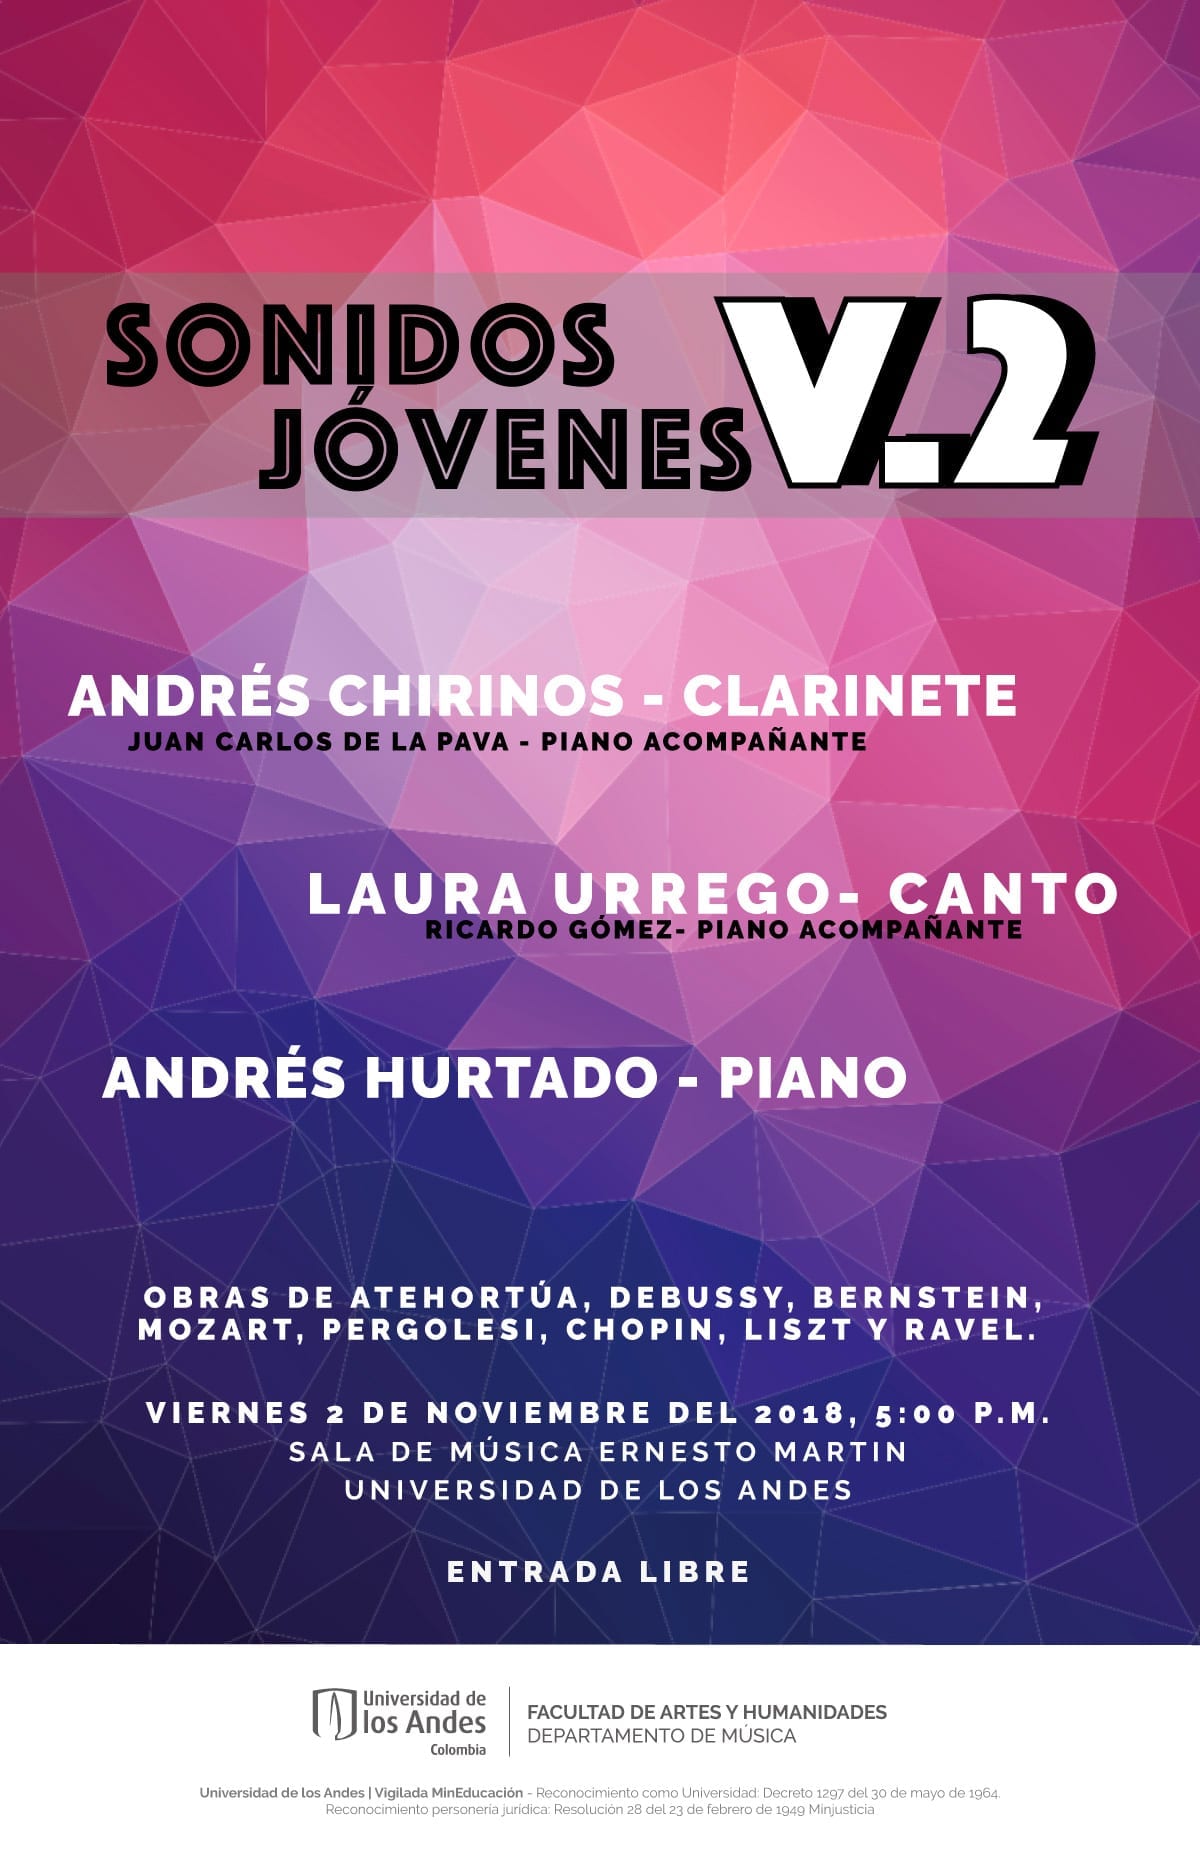 Andrés Chirinos, clarinete, Laura Urreo, canto y Andrés Hurtado, piano, se presentan en el segundo concierto de la serie Sonidos Jóvenes.